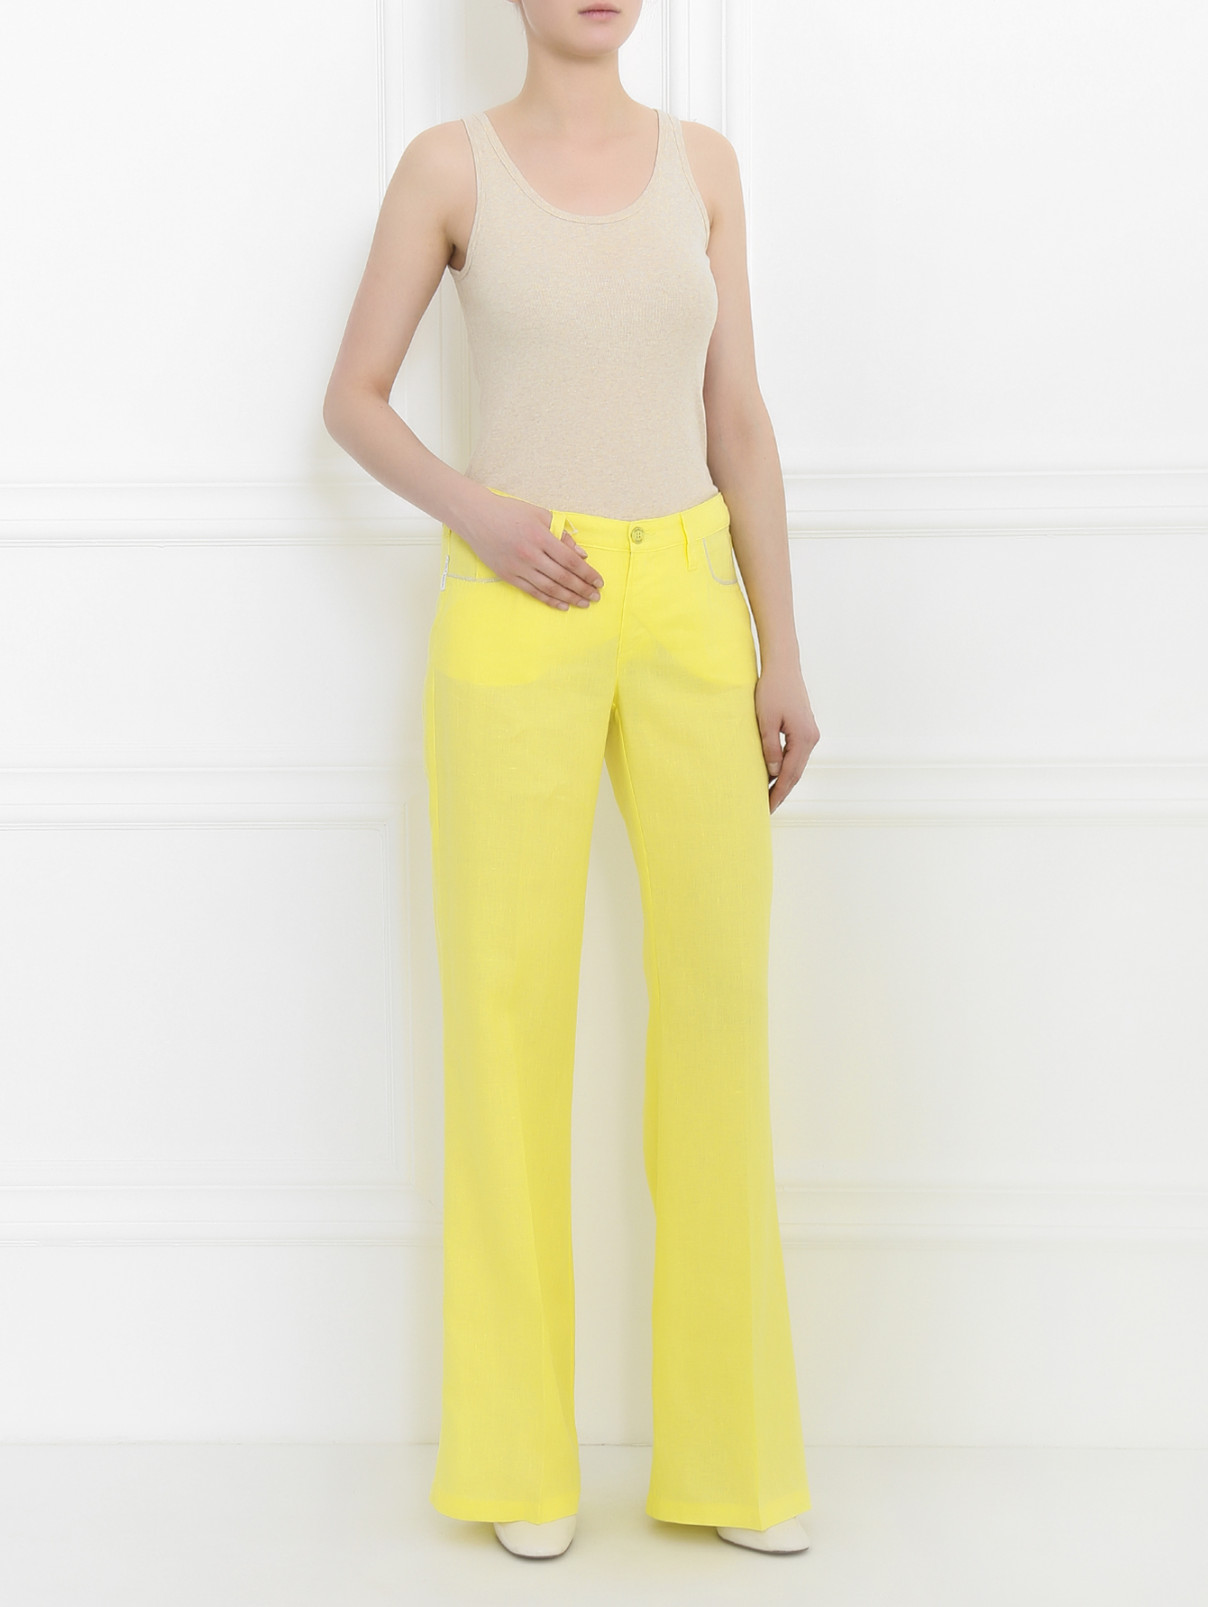 Брюки изо льна свободного кроя Armani Jeans  –  Модель Общий вид  – Цвет:  Желтый